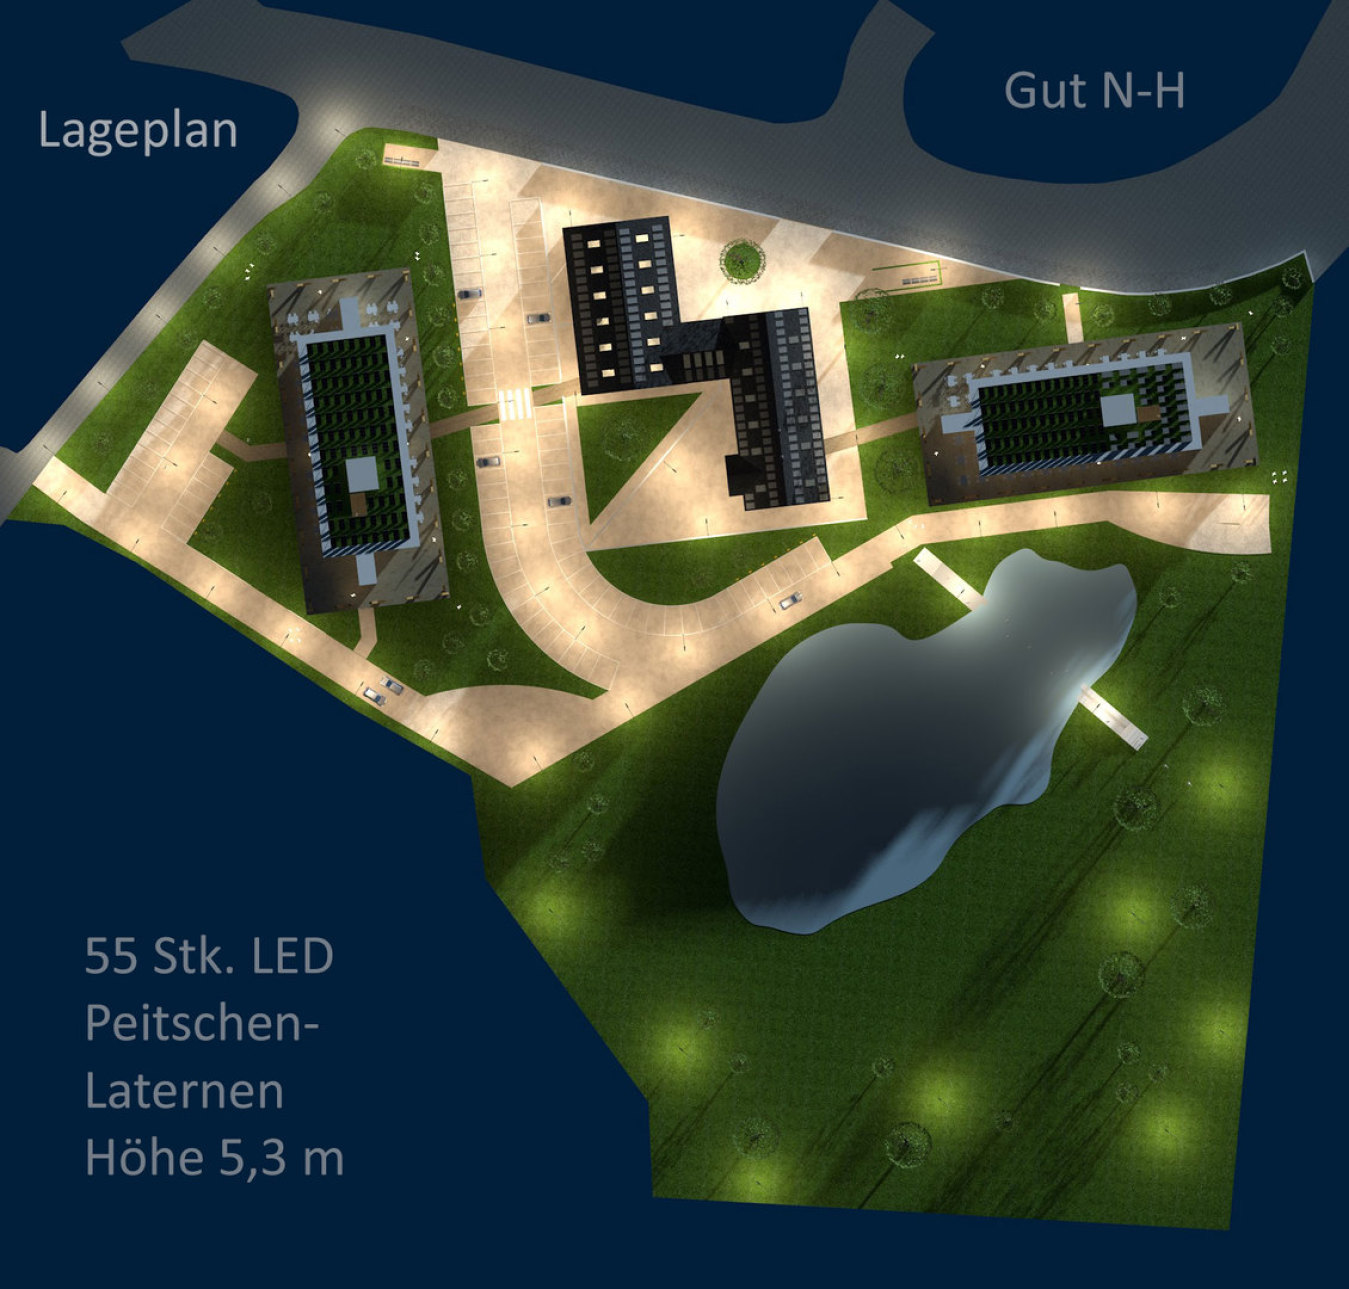 Lageplan Gut N-H - Nacht - Aufsicht 3D